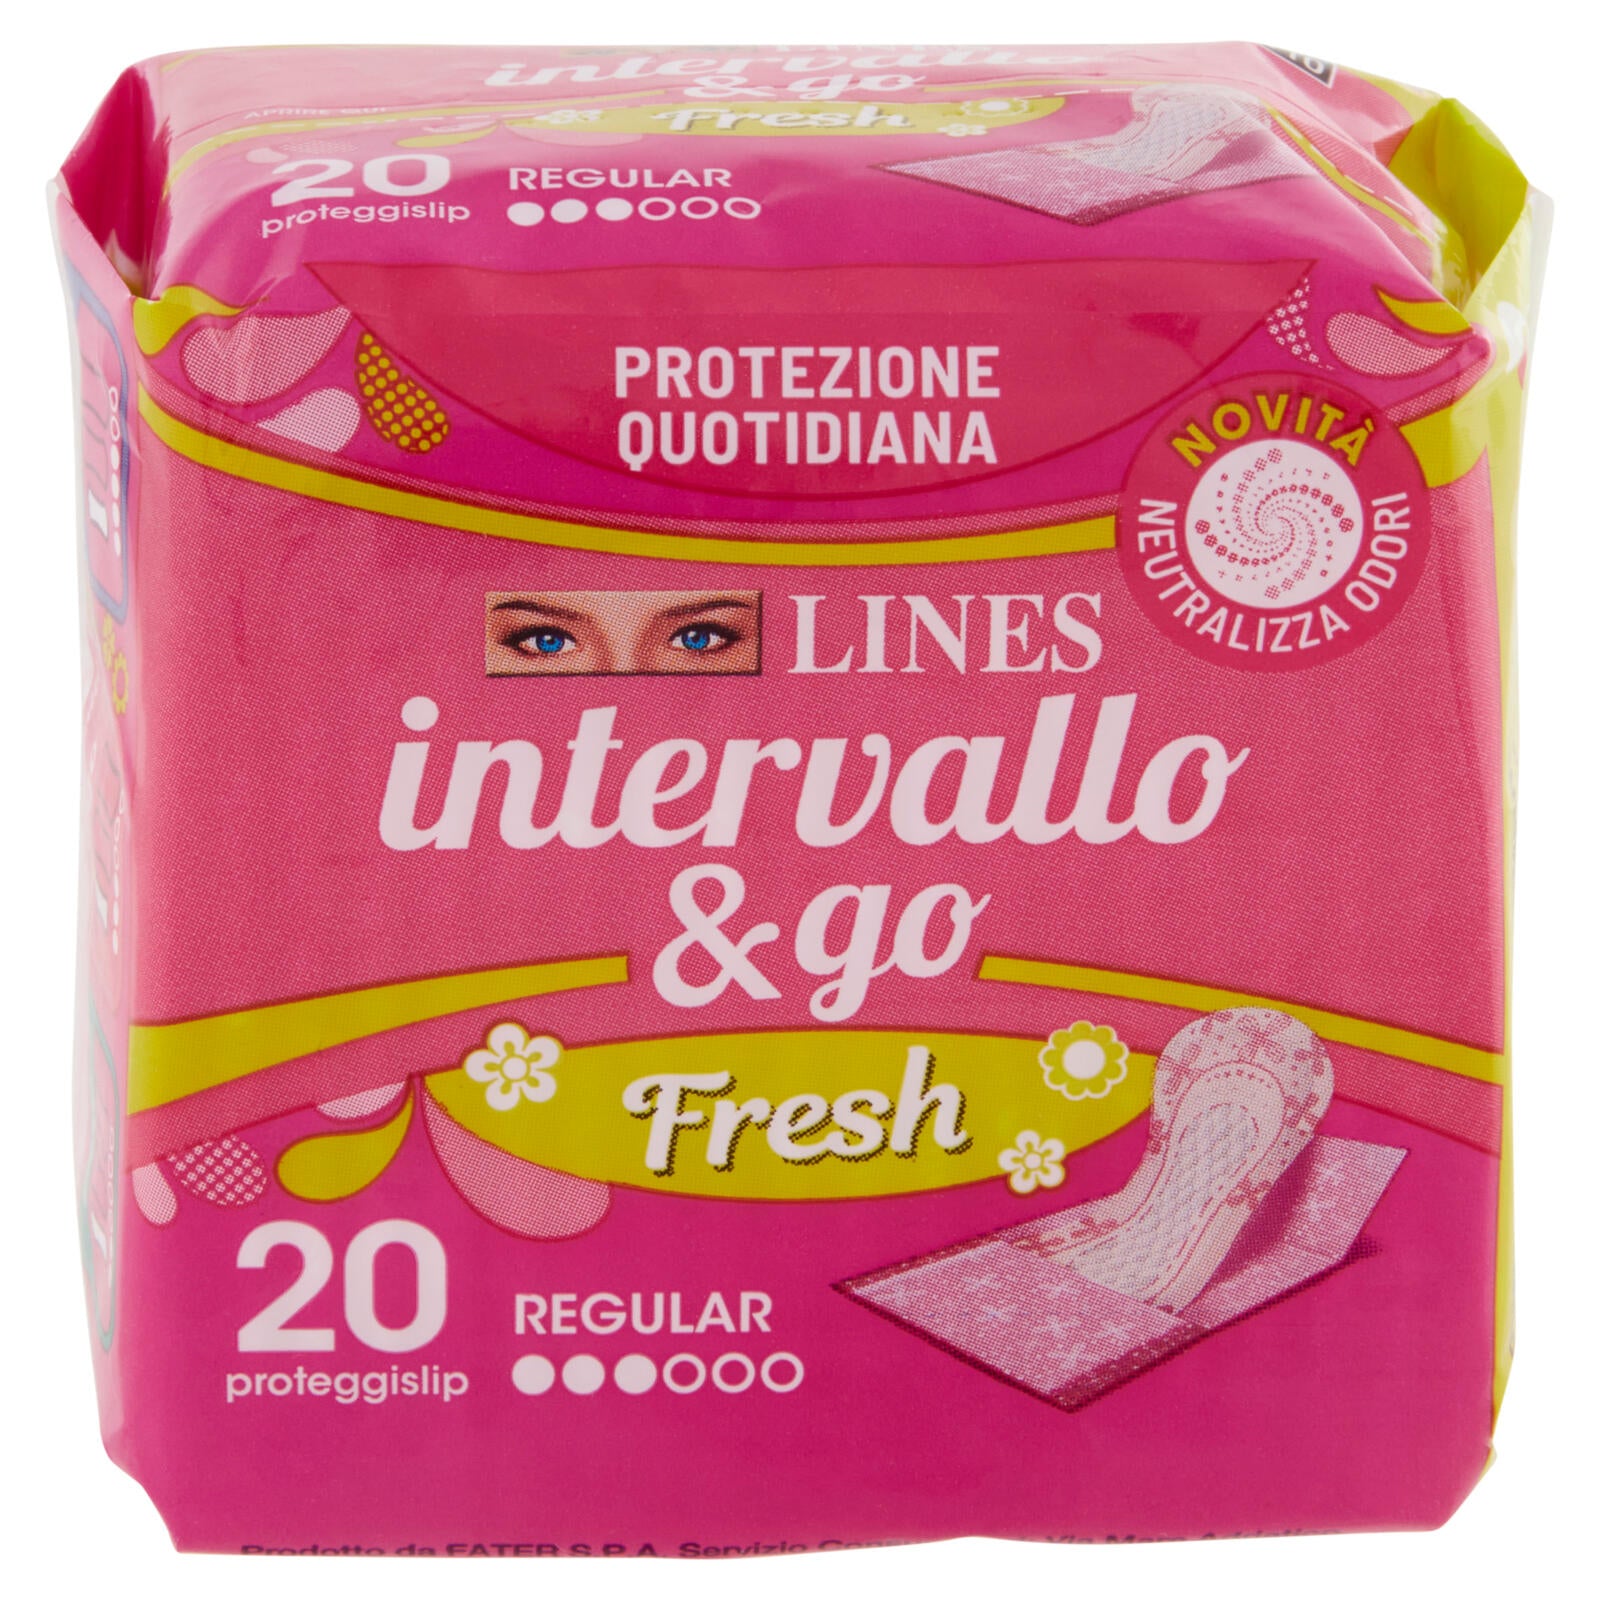 Lines intervallo & go Fresh proteggislip Regular Ripiegato 20 pz